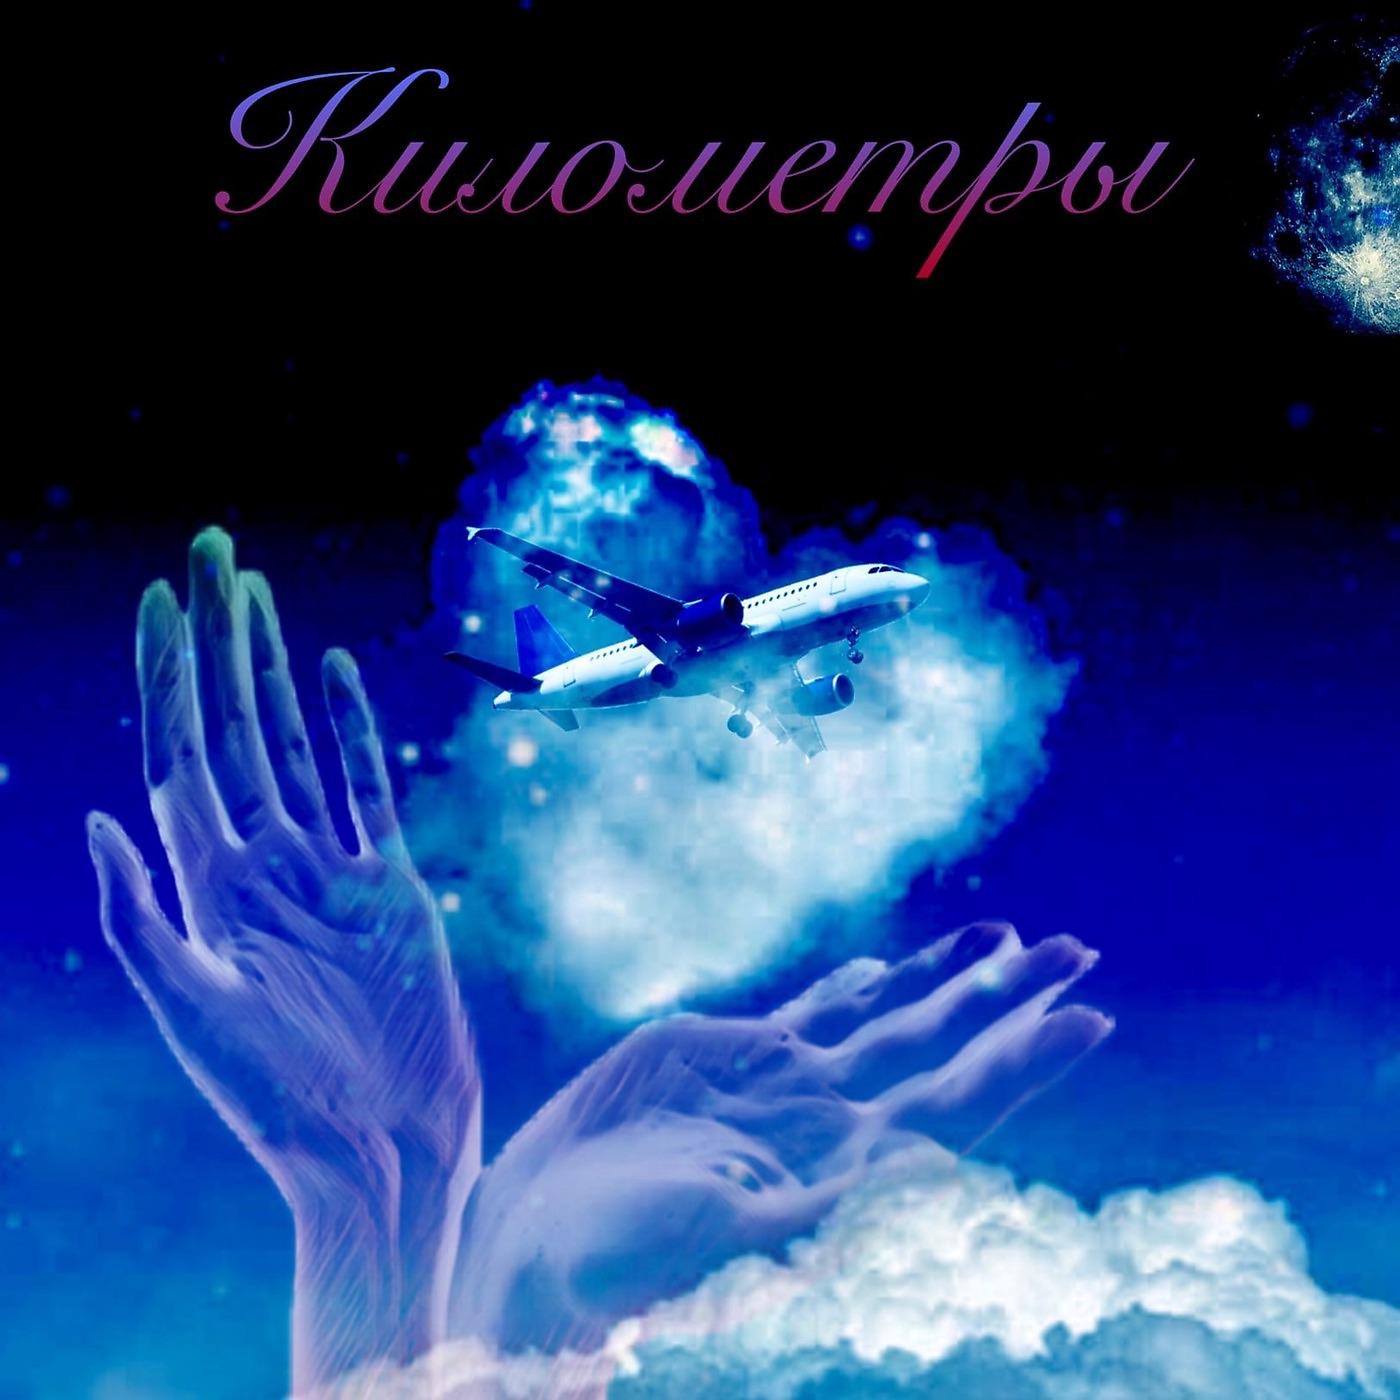 Постер альбома Километры